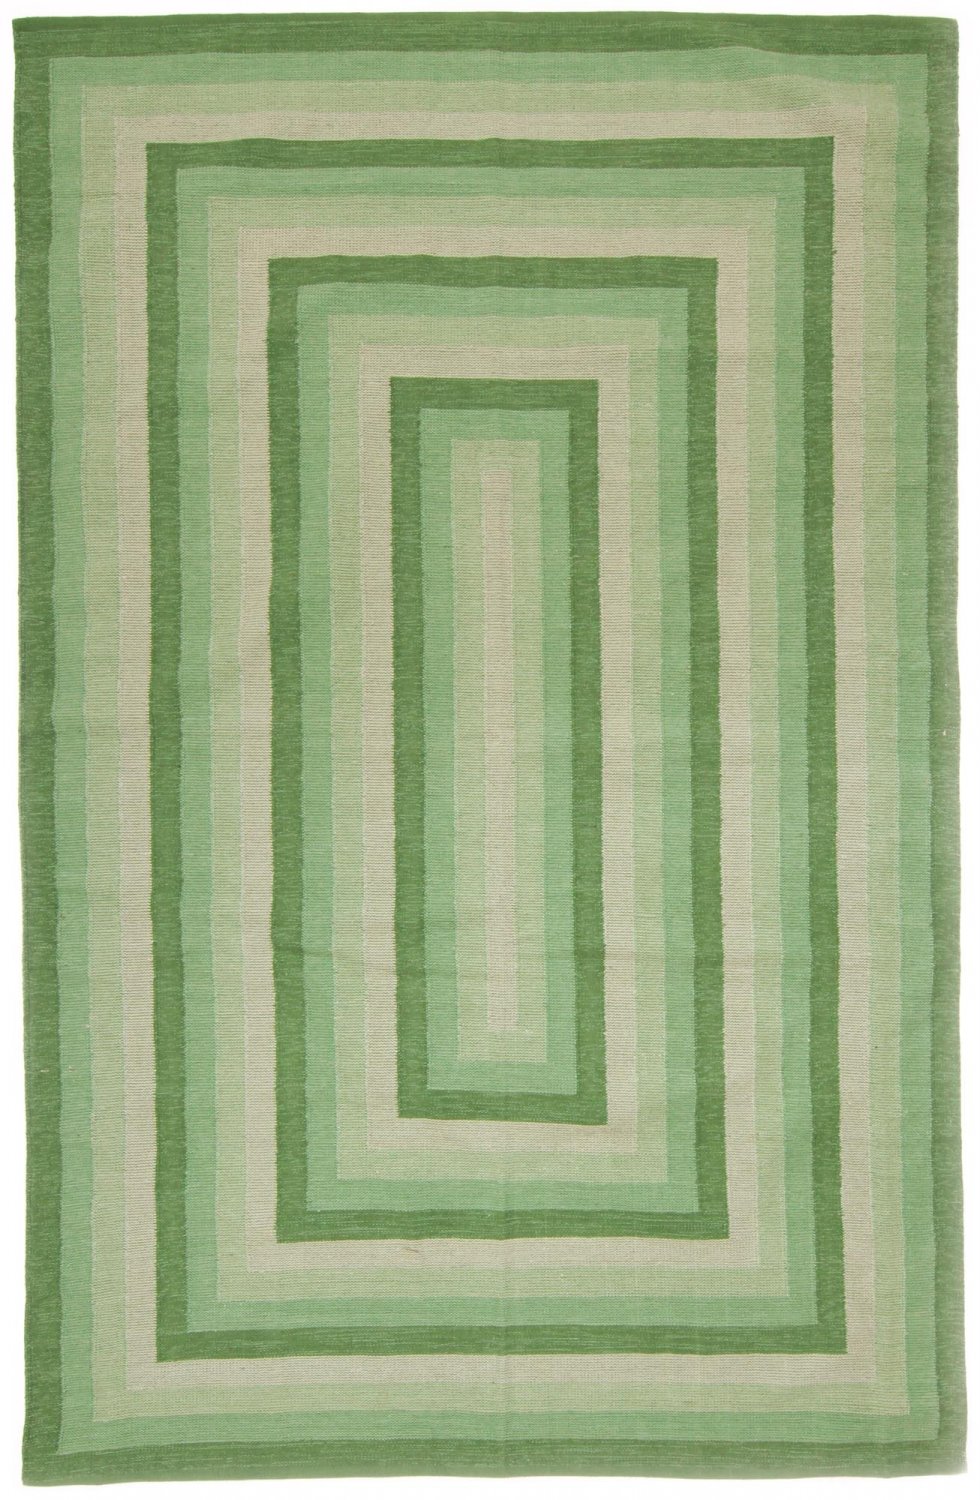 Dywan bawełniany - Chania (zielony)